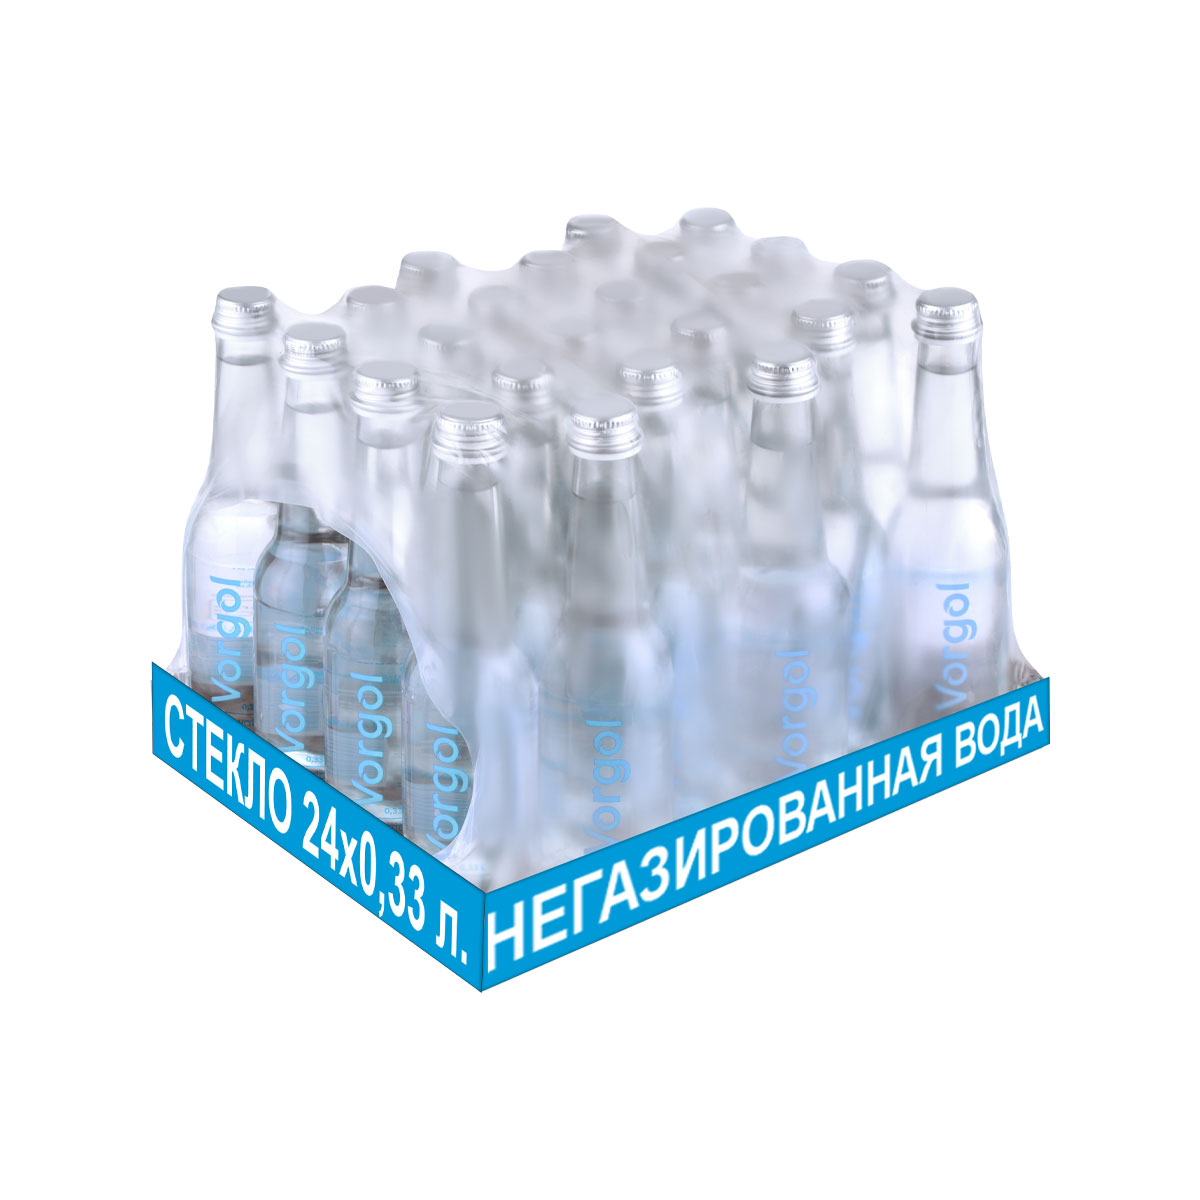 Вода питьевая Vorgol негазированная артезианская в стекле 24 шт. по 0.33 л. - фото 1